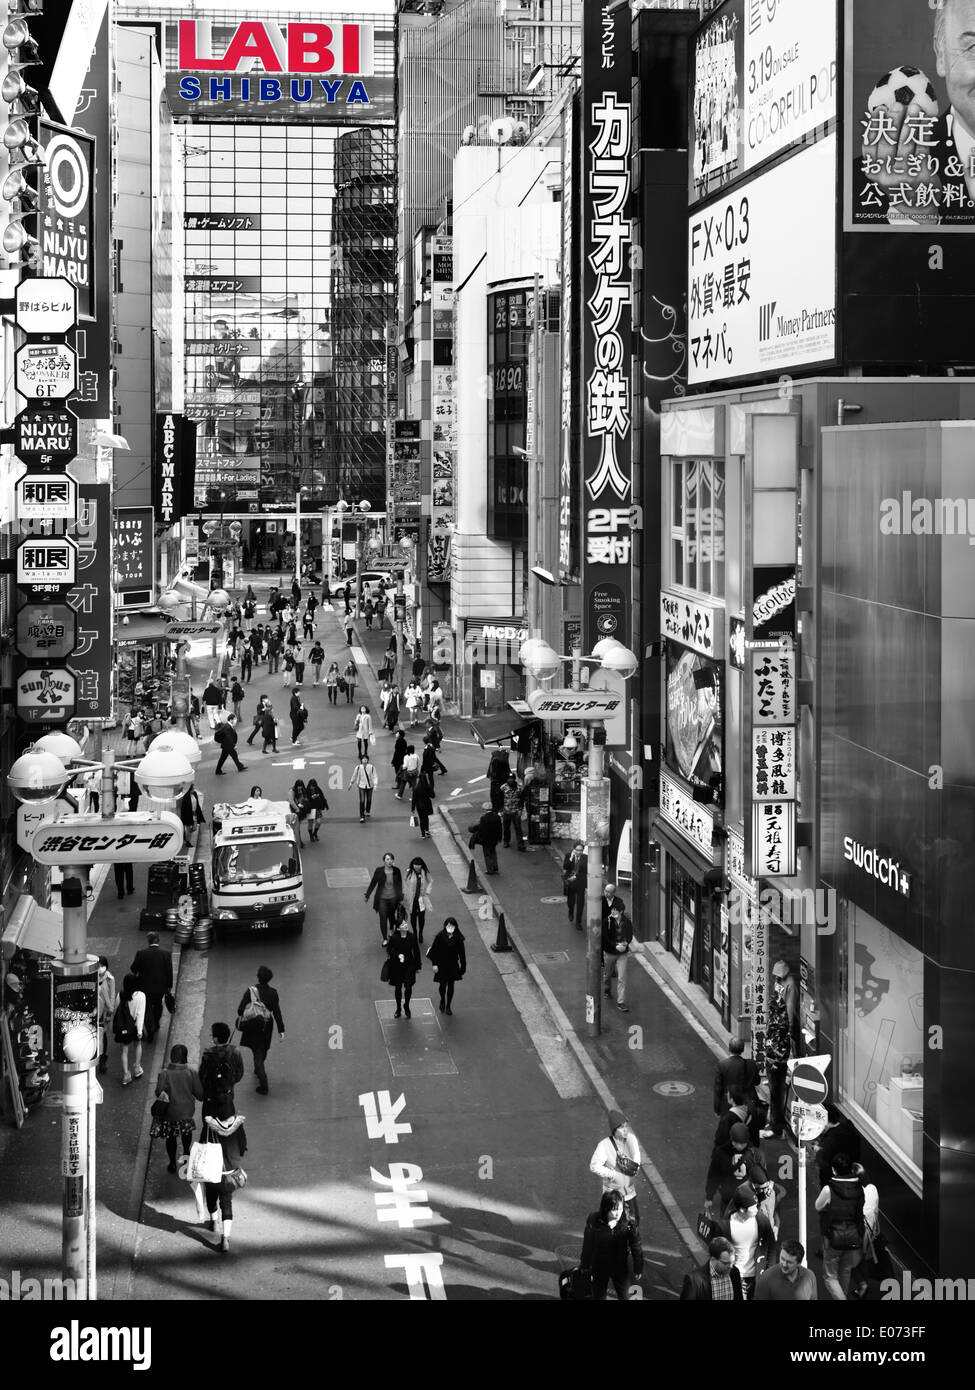 LABI grande negozio di elettronica in Shibuya, Tokyo, Giappone. In bianco e nero Foto Stock